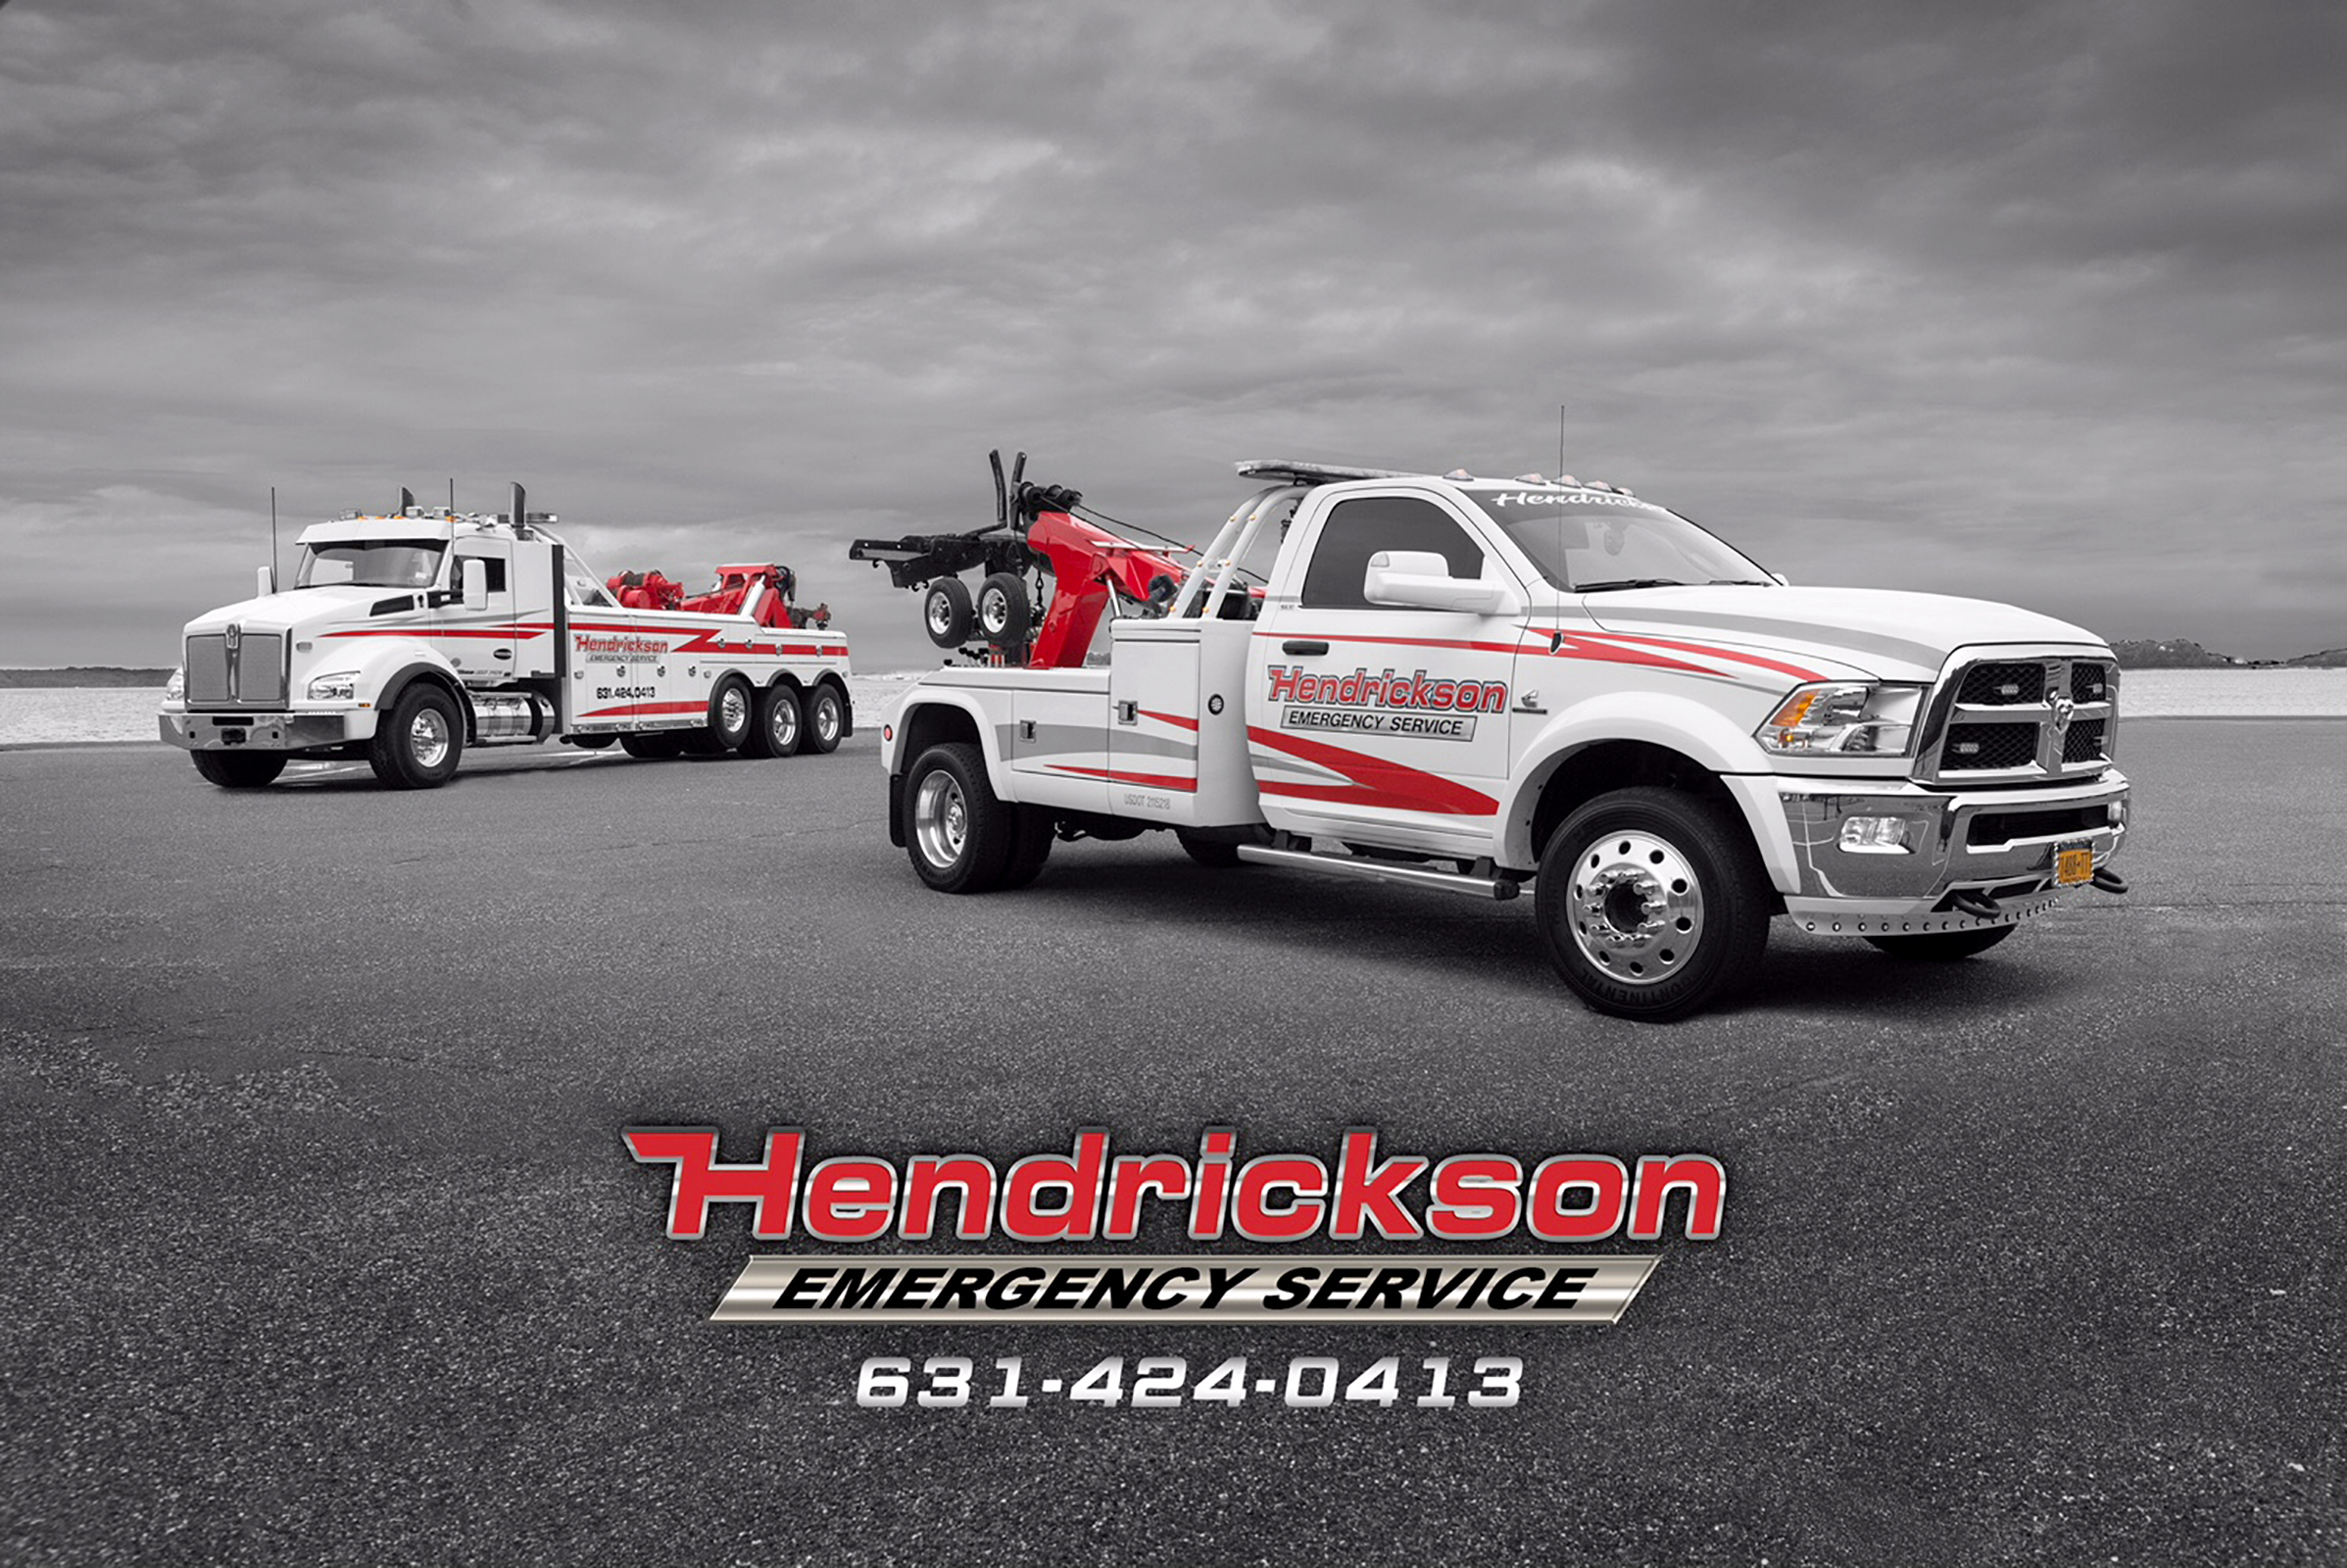 Hendrickson Emergency Service  Islandia, NY